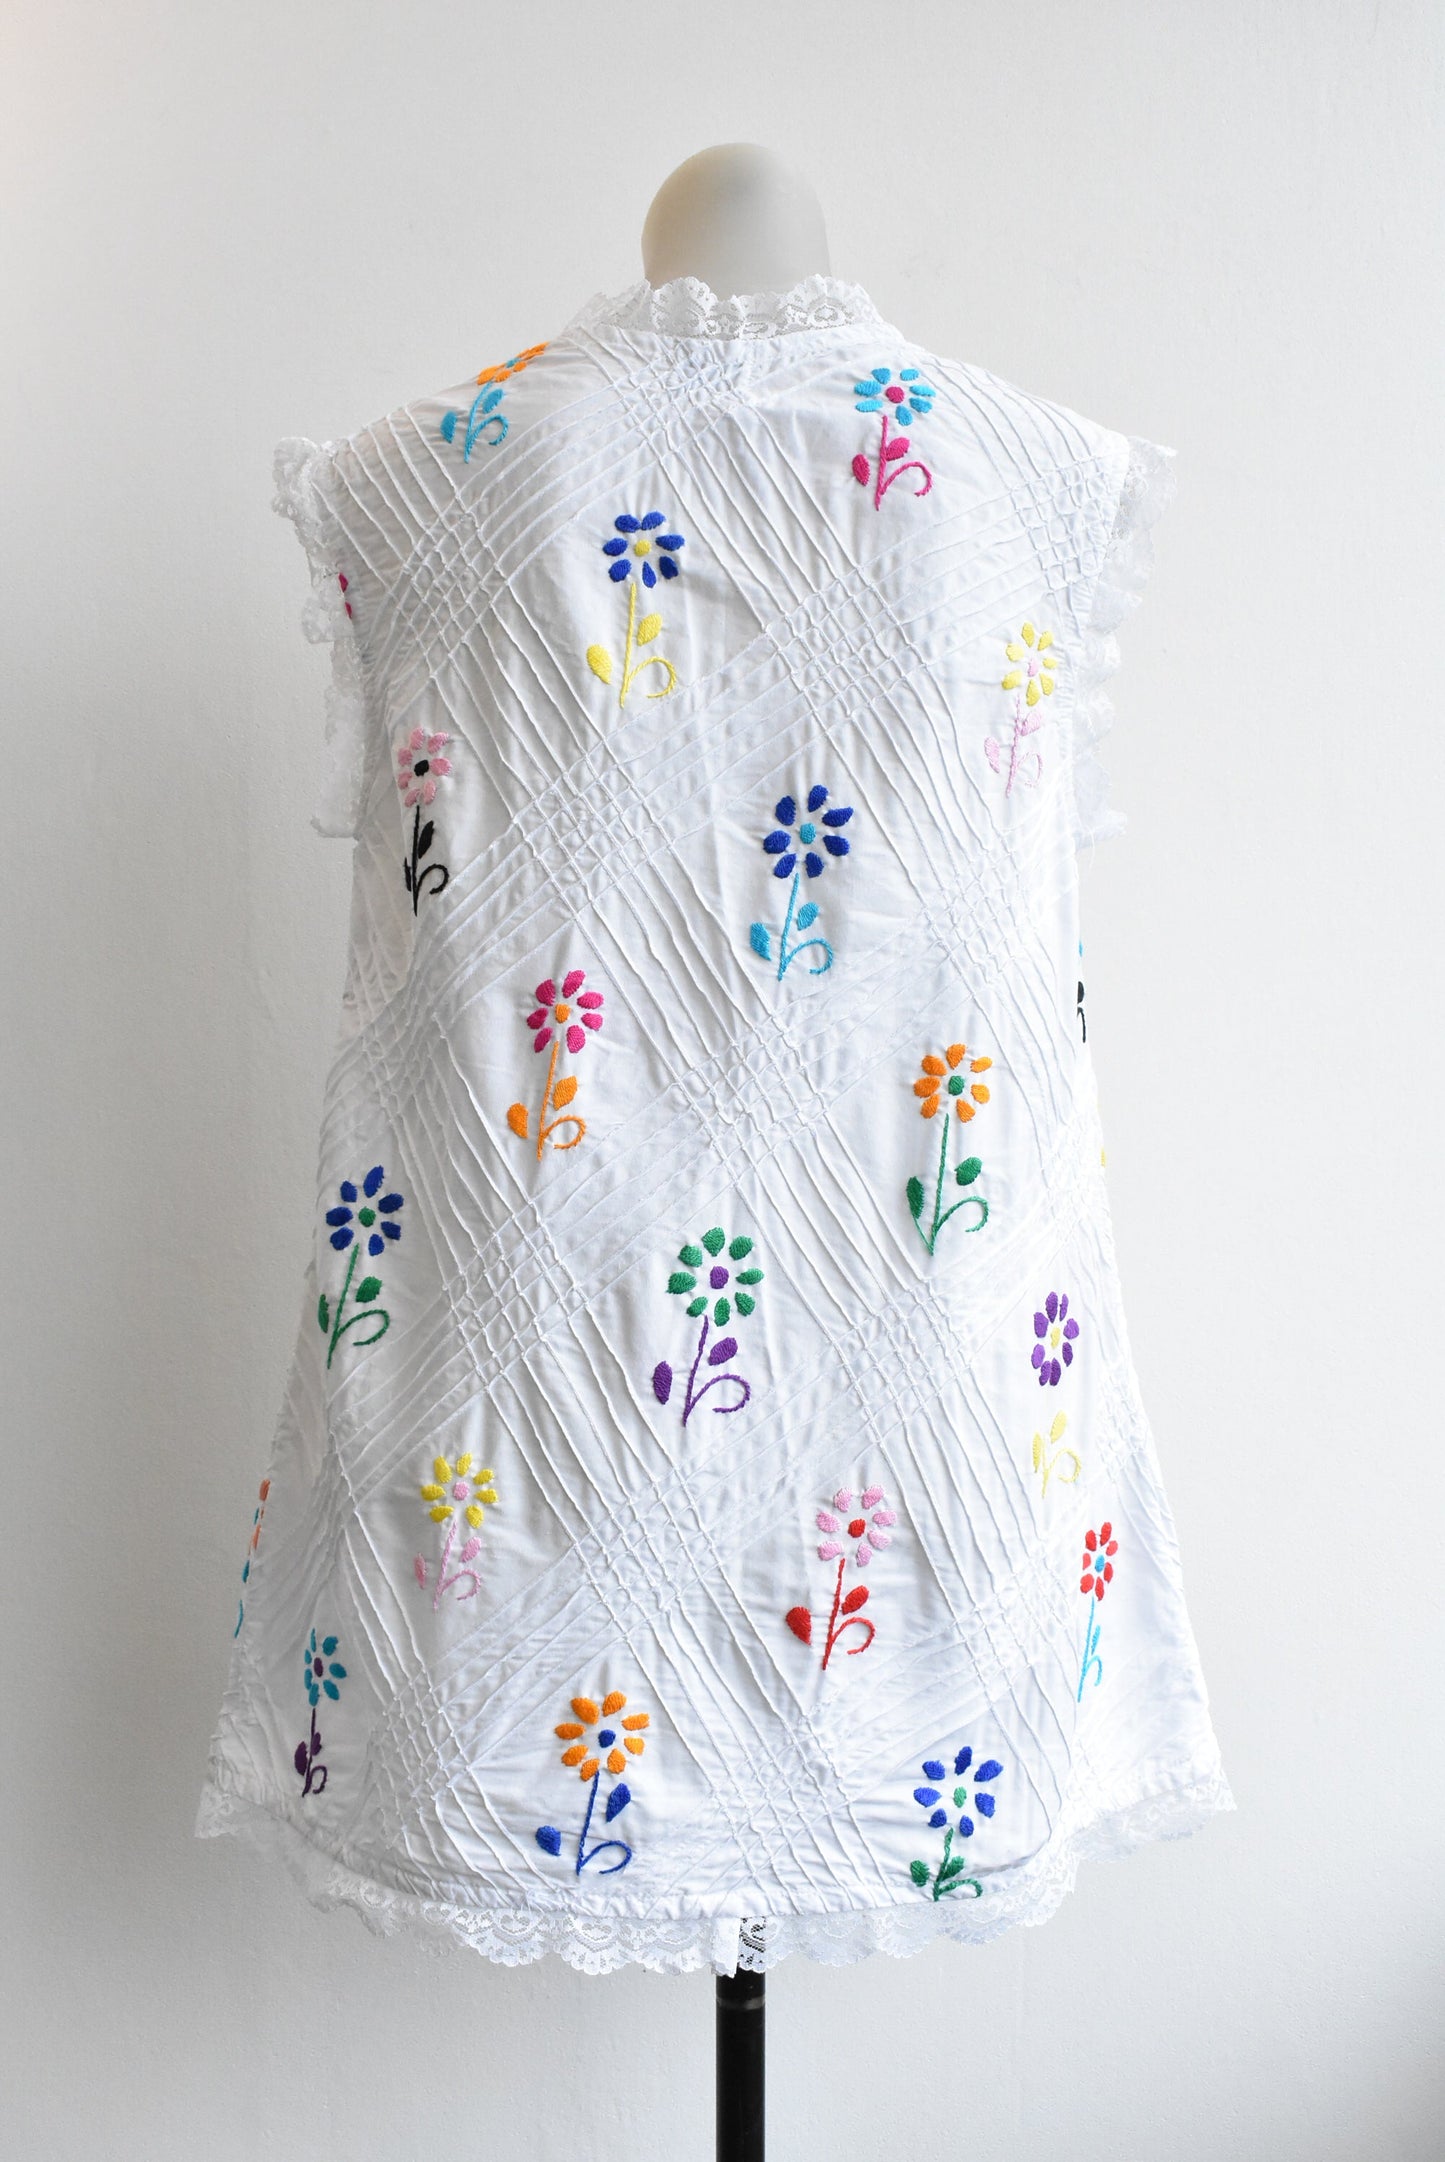 Retro La Moda embroidered lace vest, size M